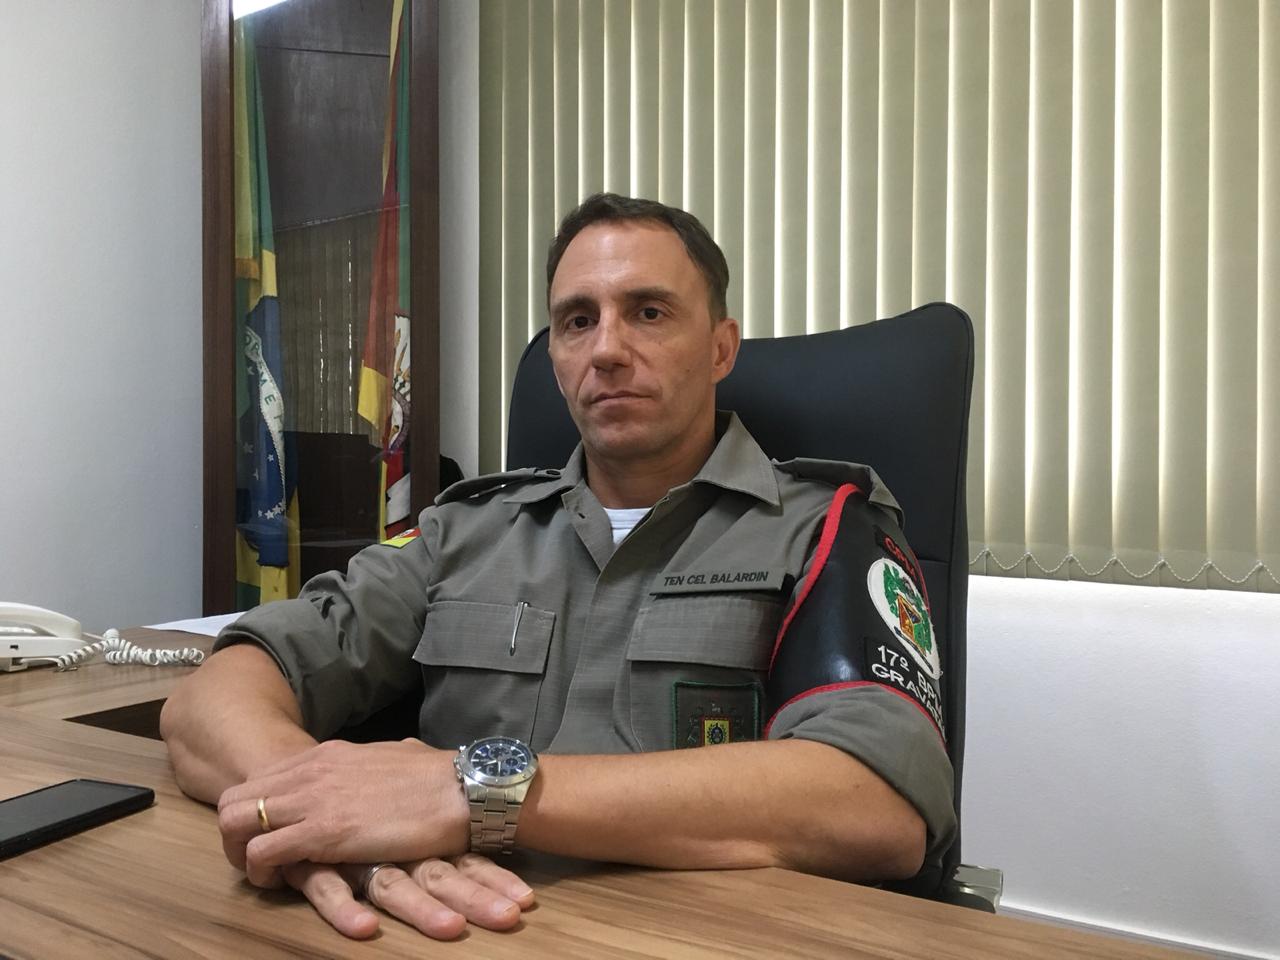 Exclusivo | Frota renovada e novos policiais em Gravataí; o ano de 2019 para a BM